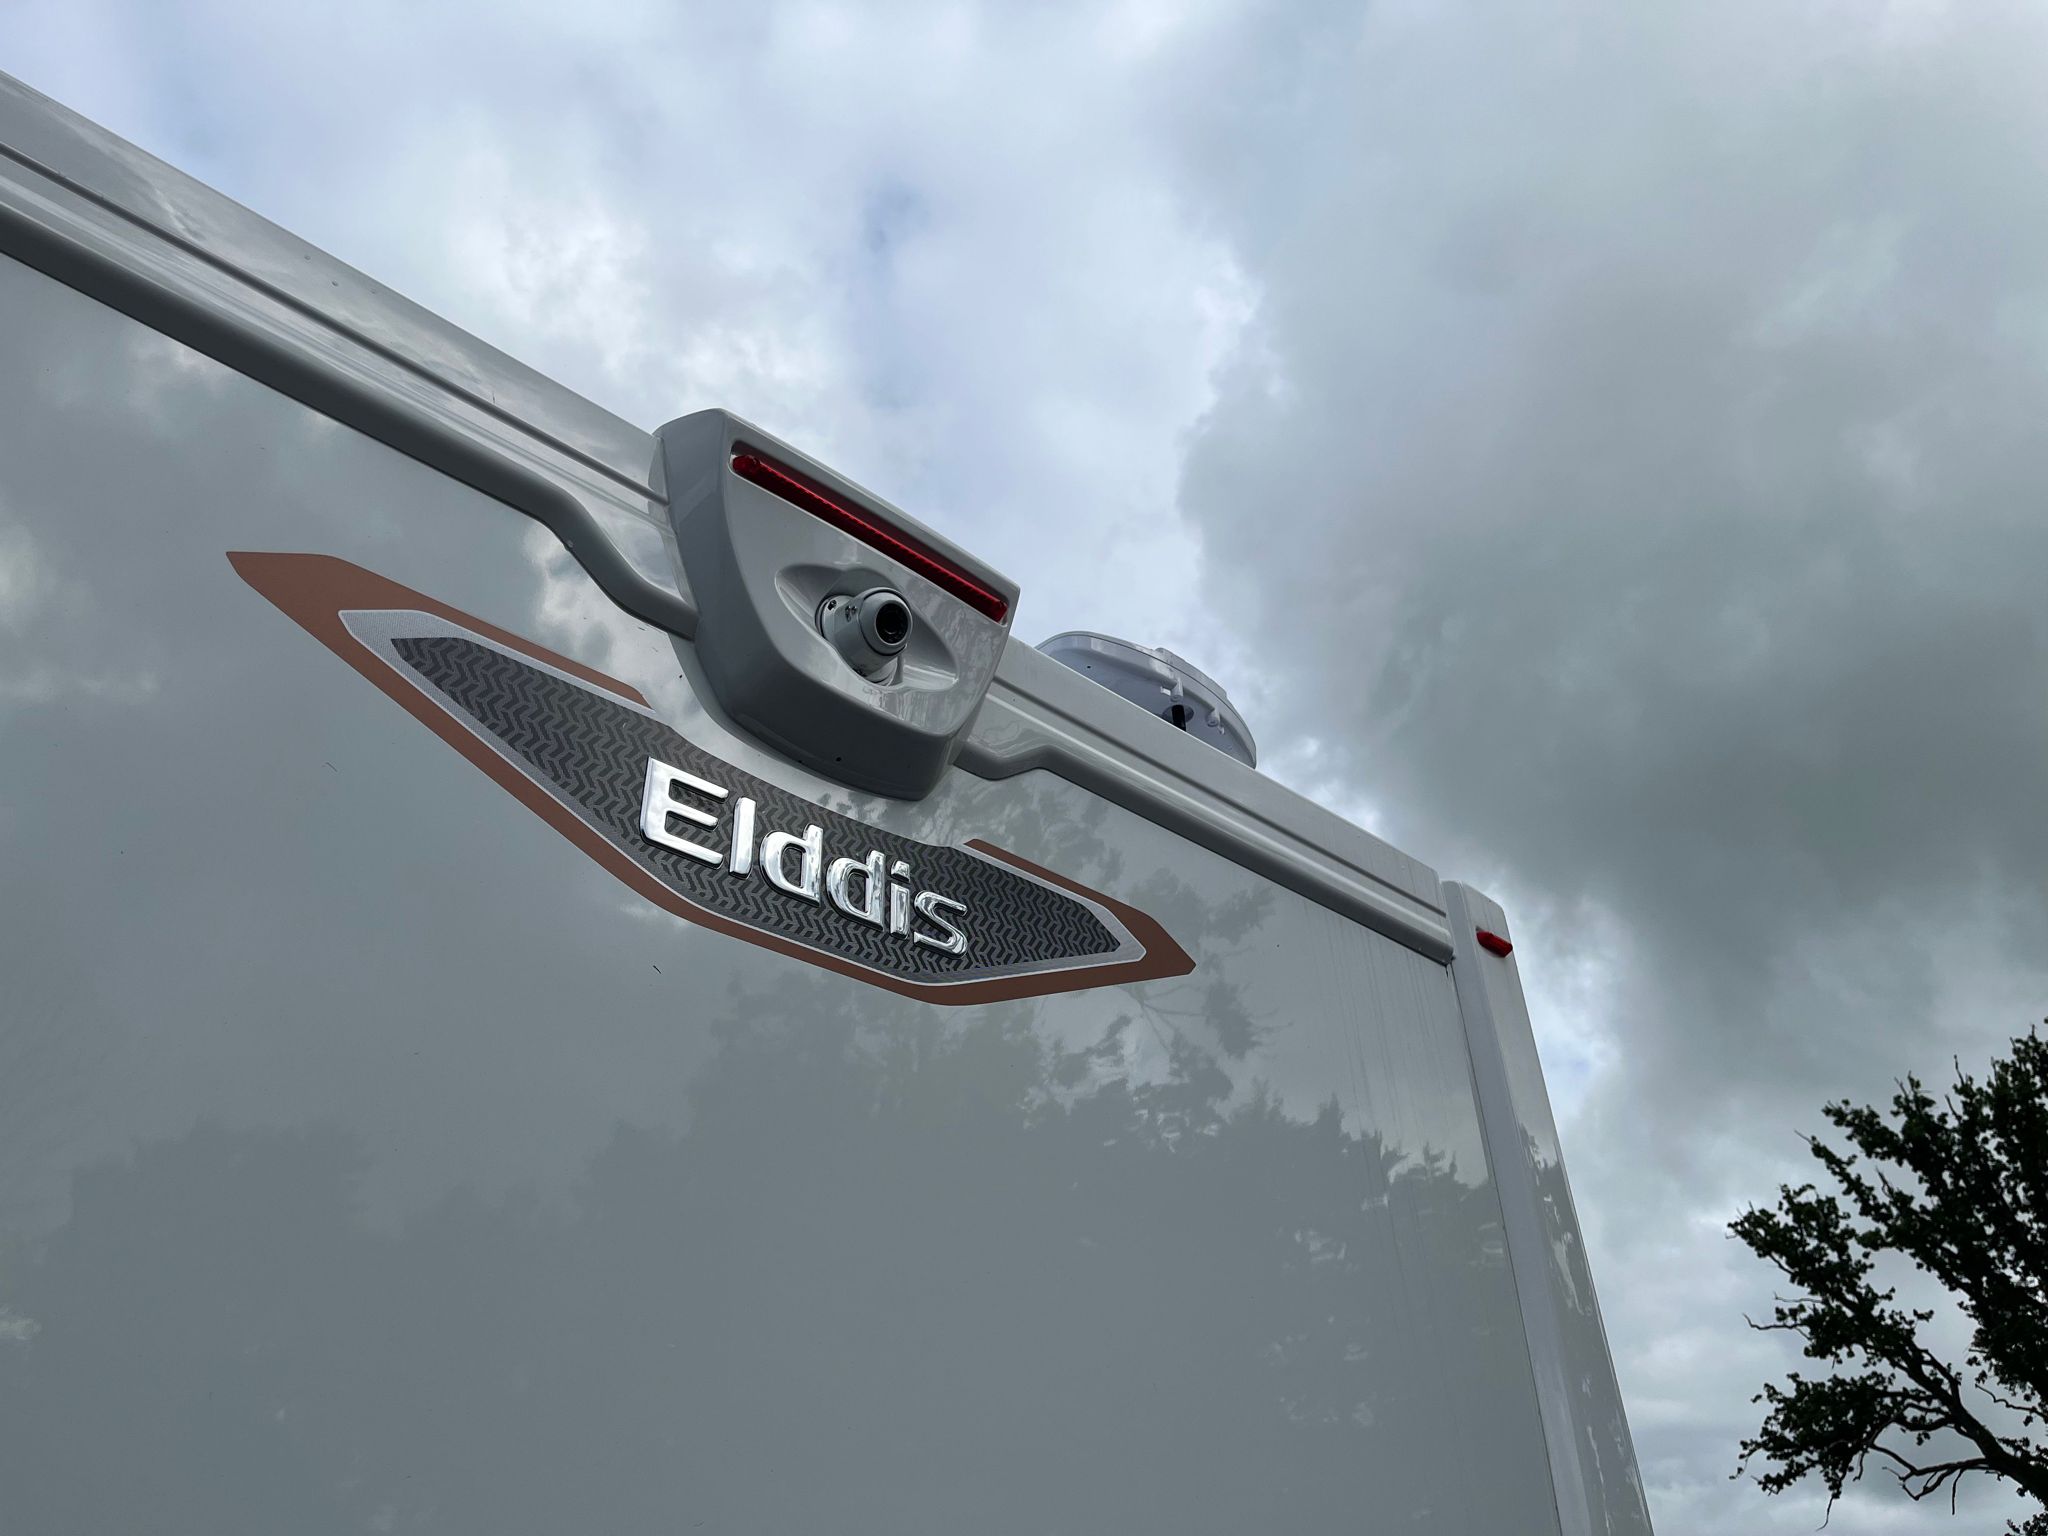 NEW Elddis Encore 250 - Automatic